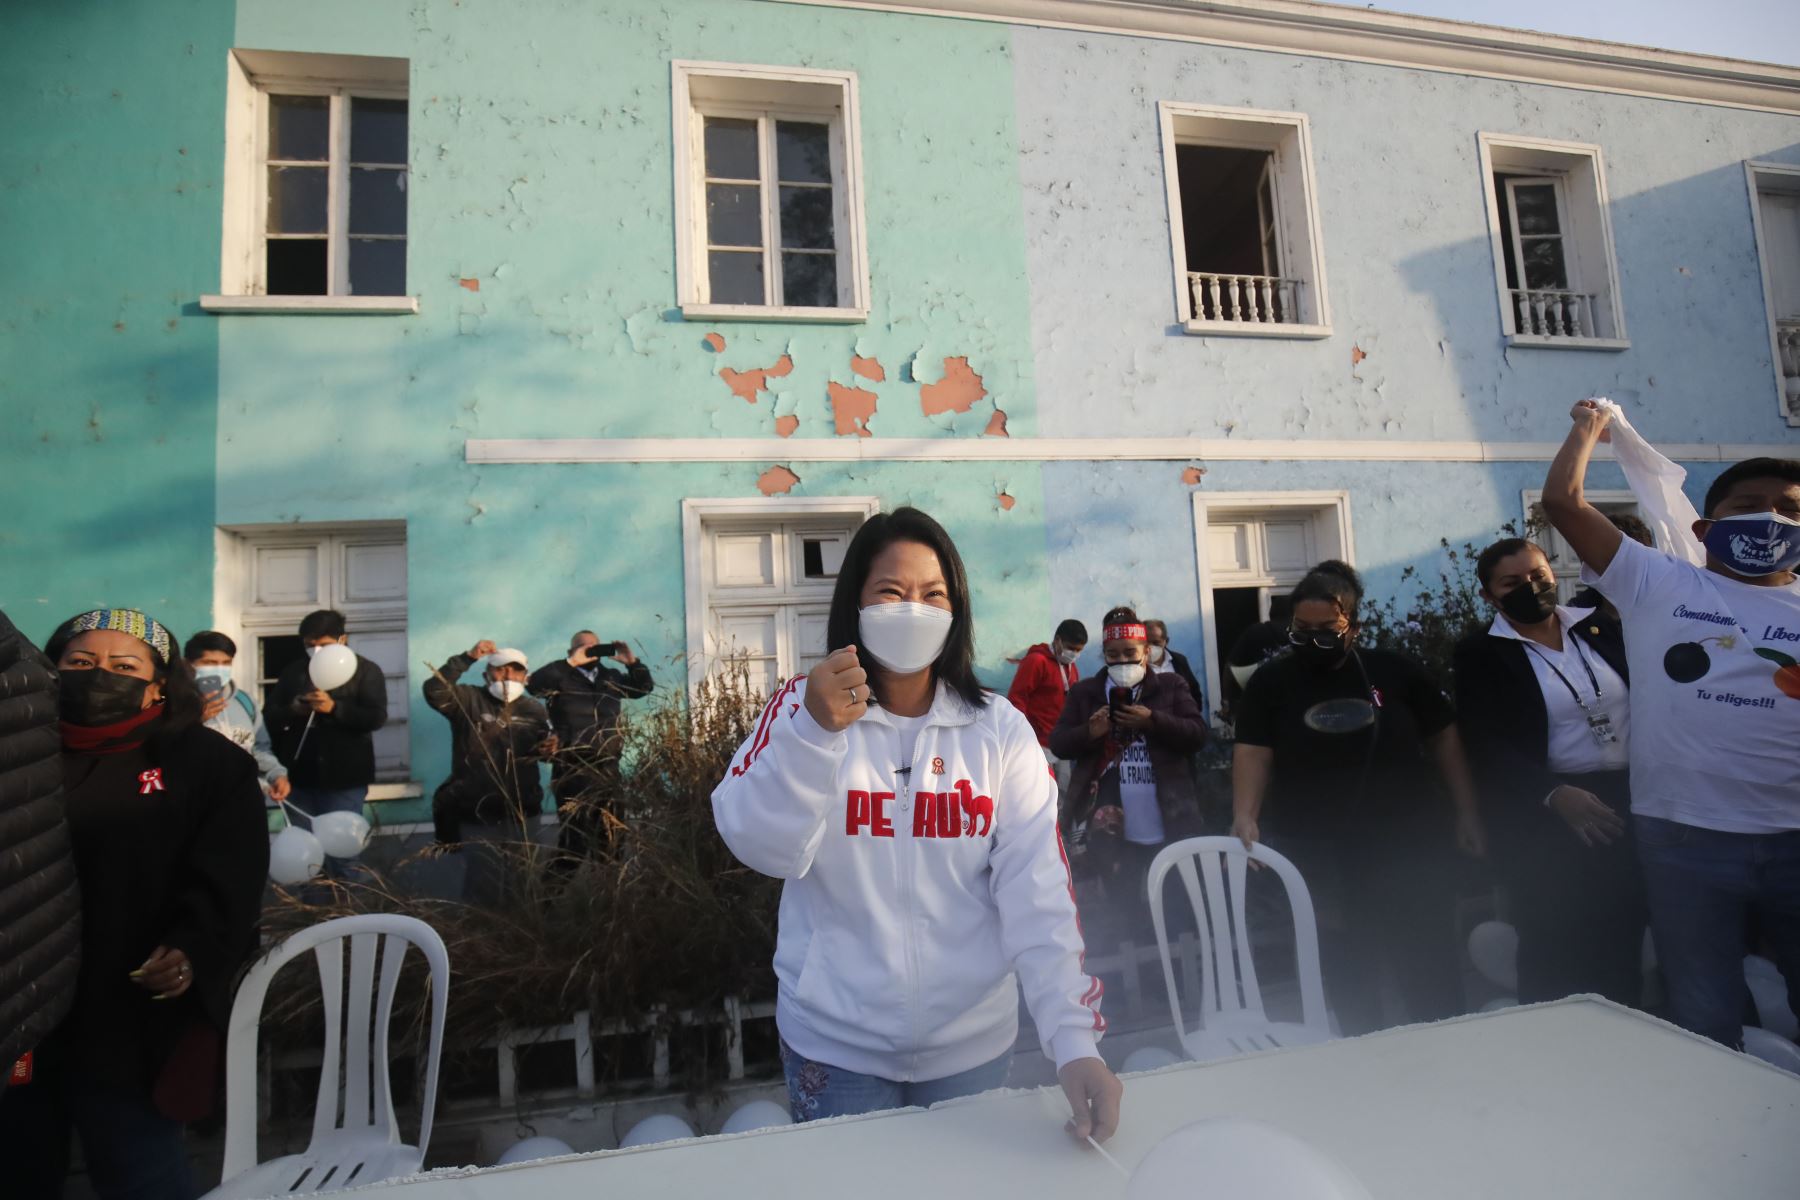 Keiko Fujimori realiza actividades en Quinta Heeren de Barrios Altos.
Foto: ANDINA/ Juan Carlos Guzmán